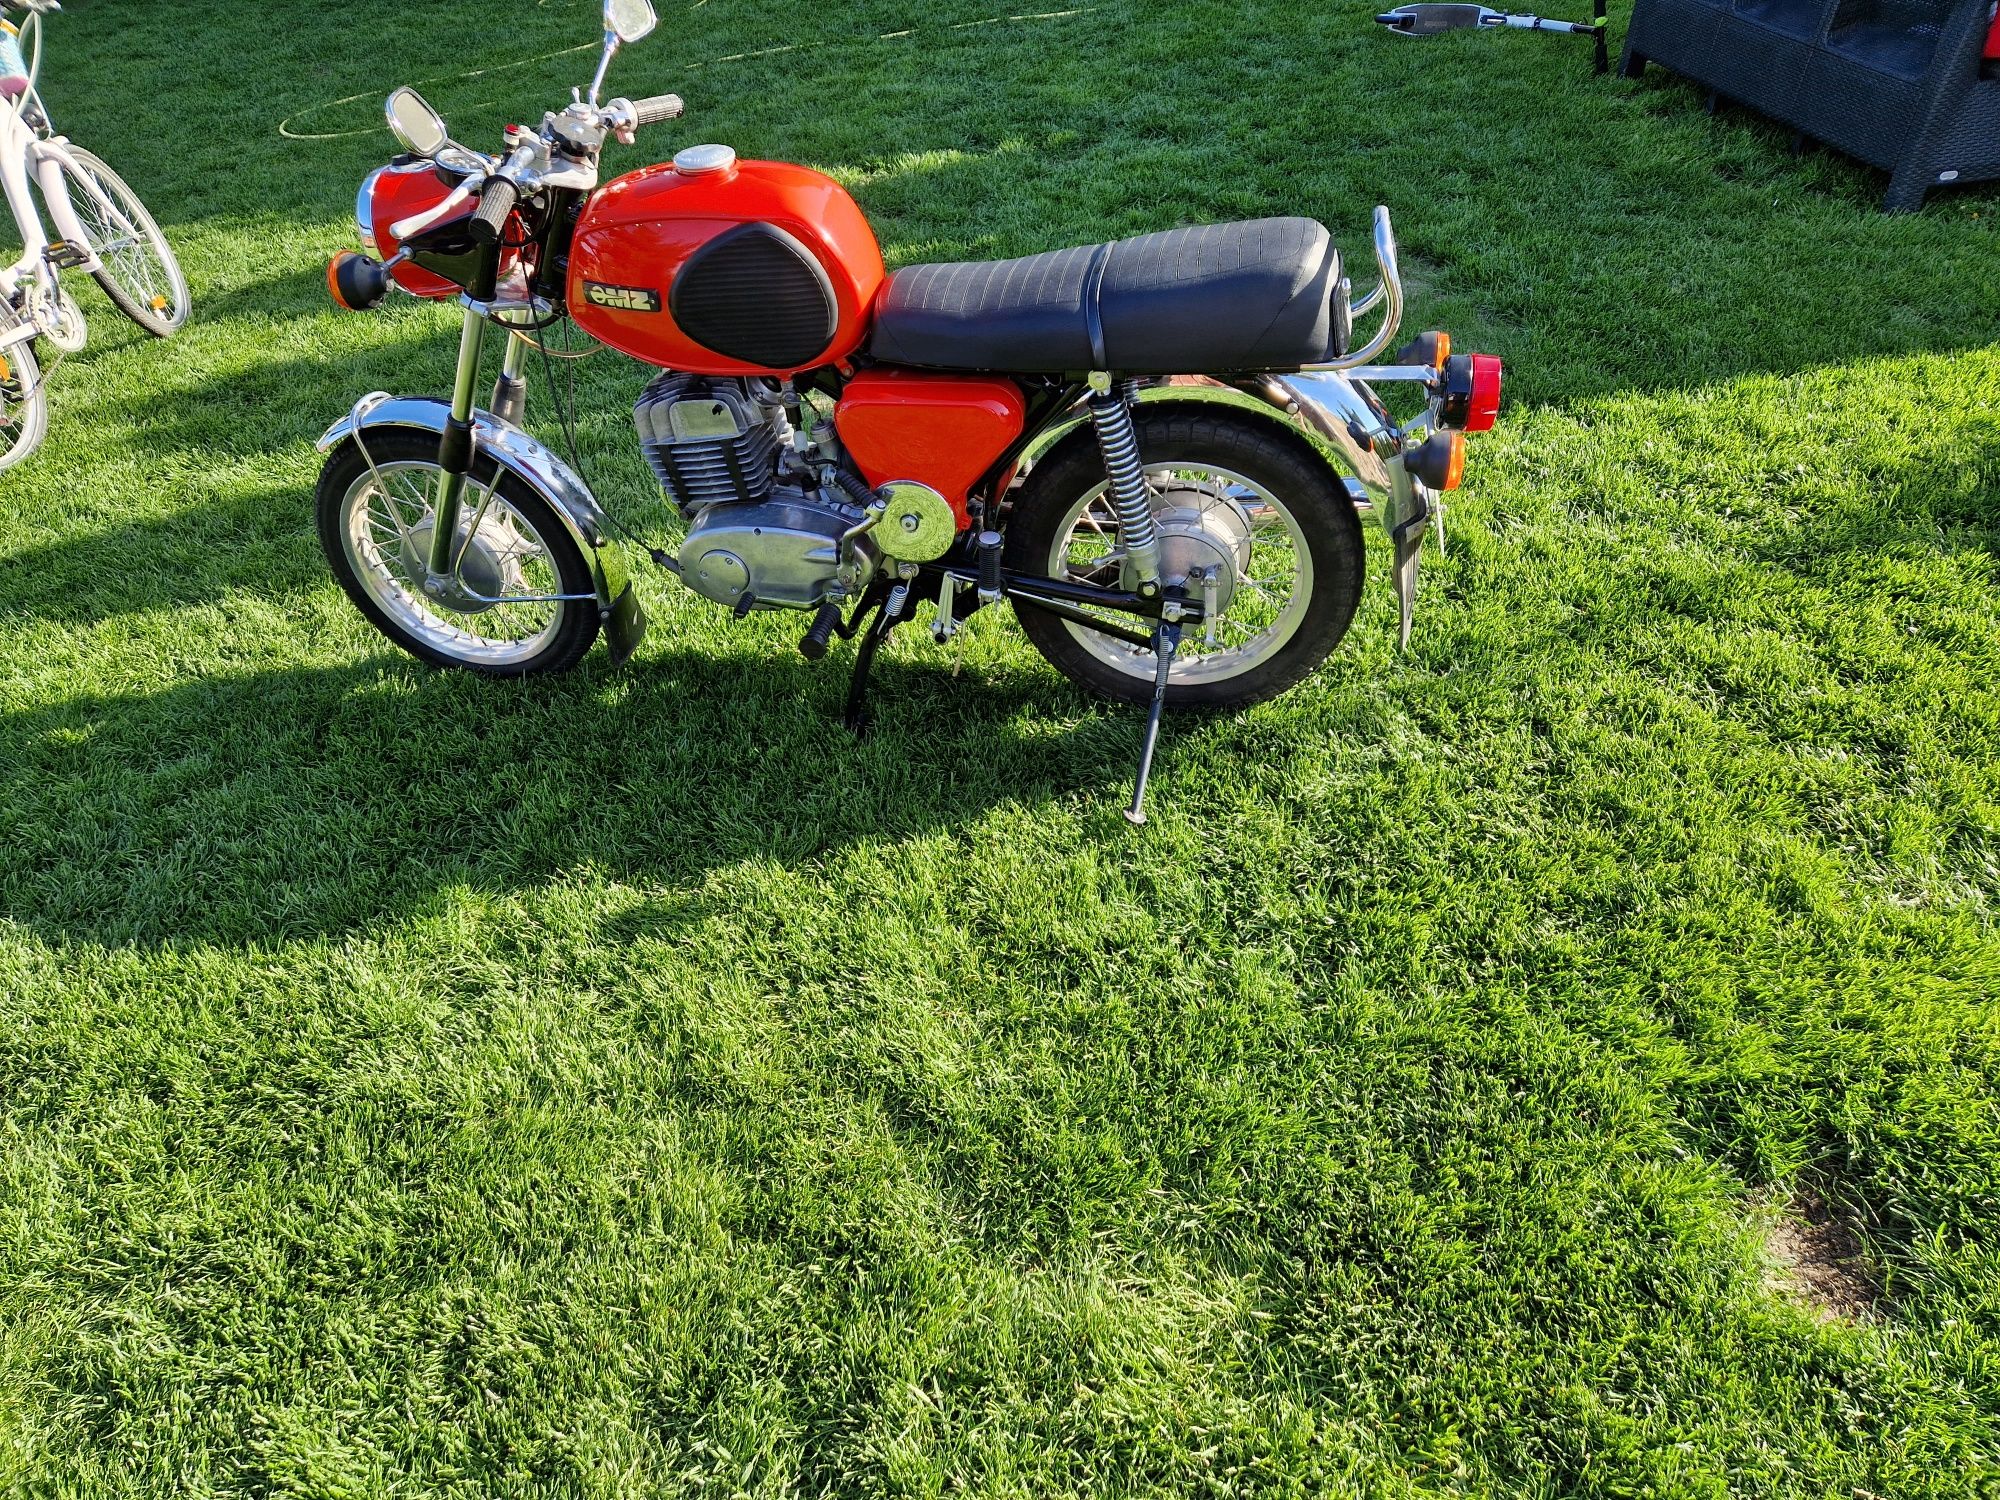 Motocykl MZ 250 TS